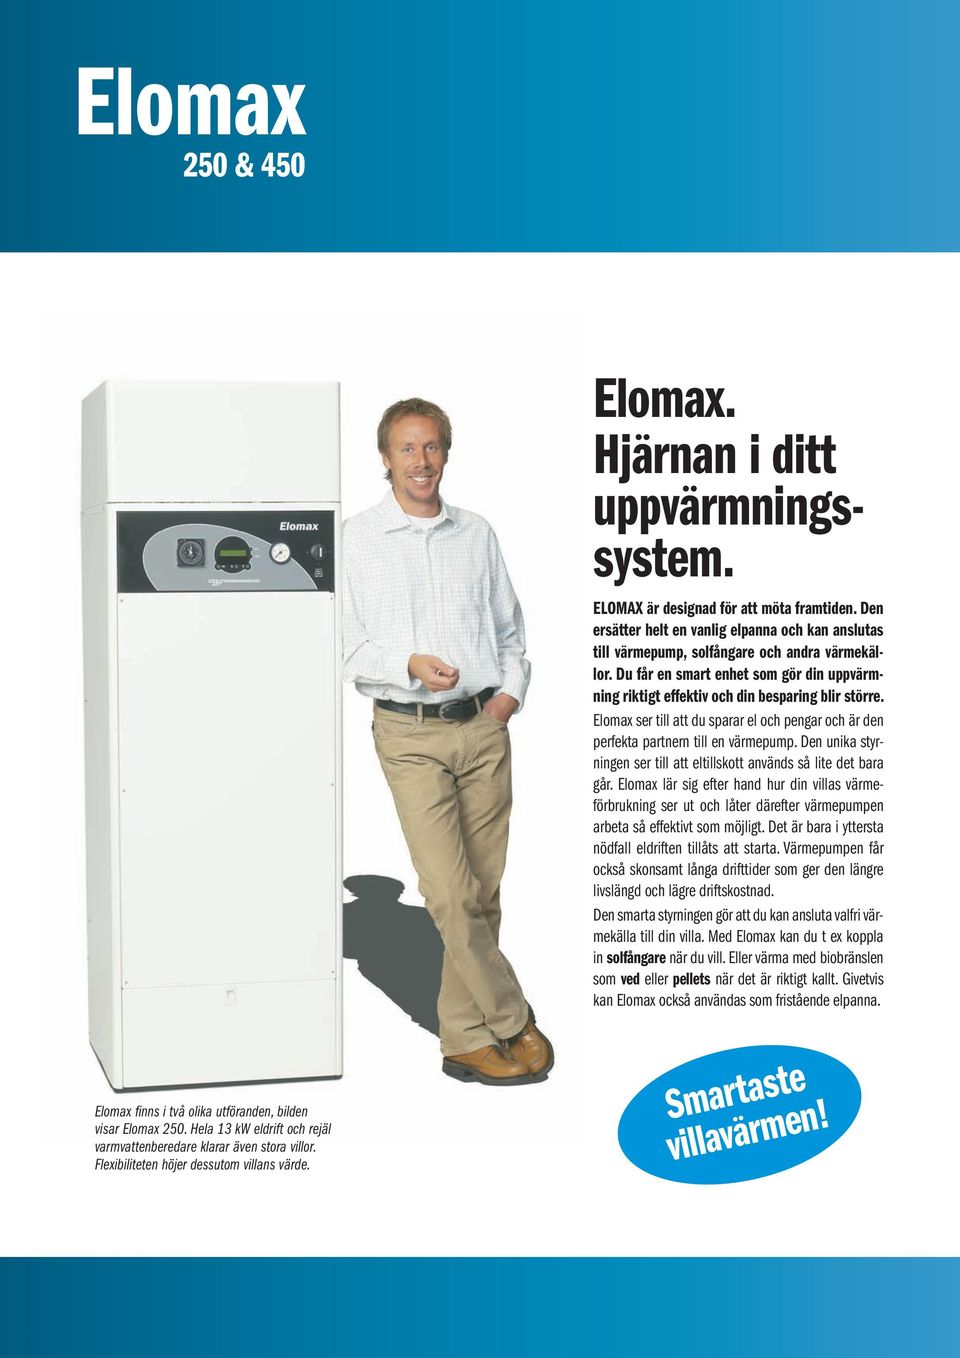 Elomax ser till att du sparar el och pengar och är den perfekta partnern till en värmepump. Den unika styrningen ser till att eltillskott används så lite det bara går.